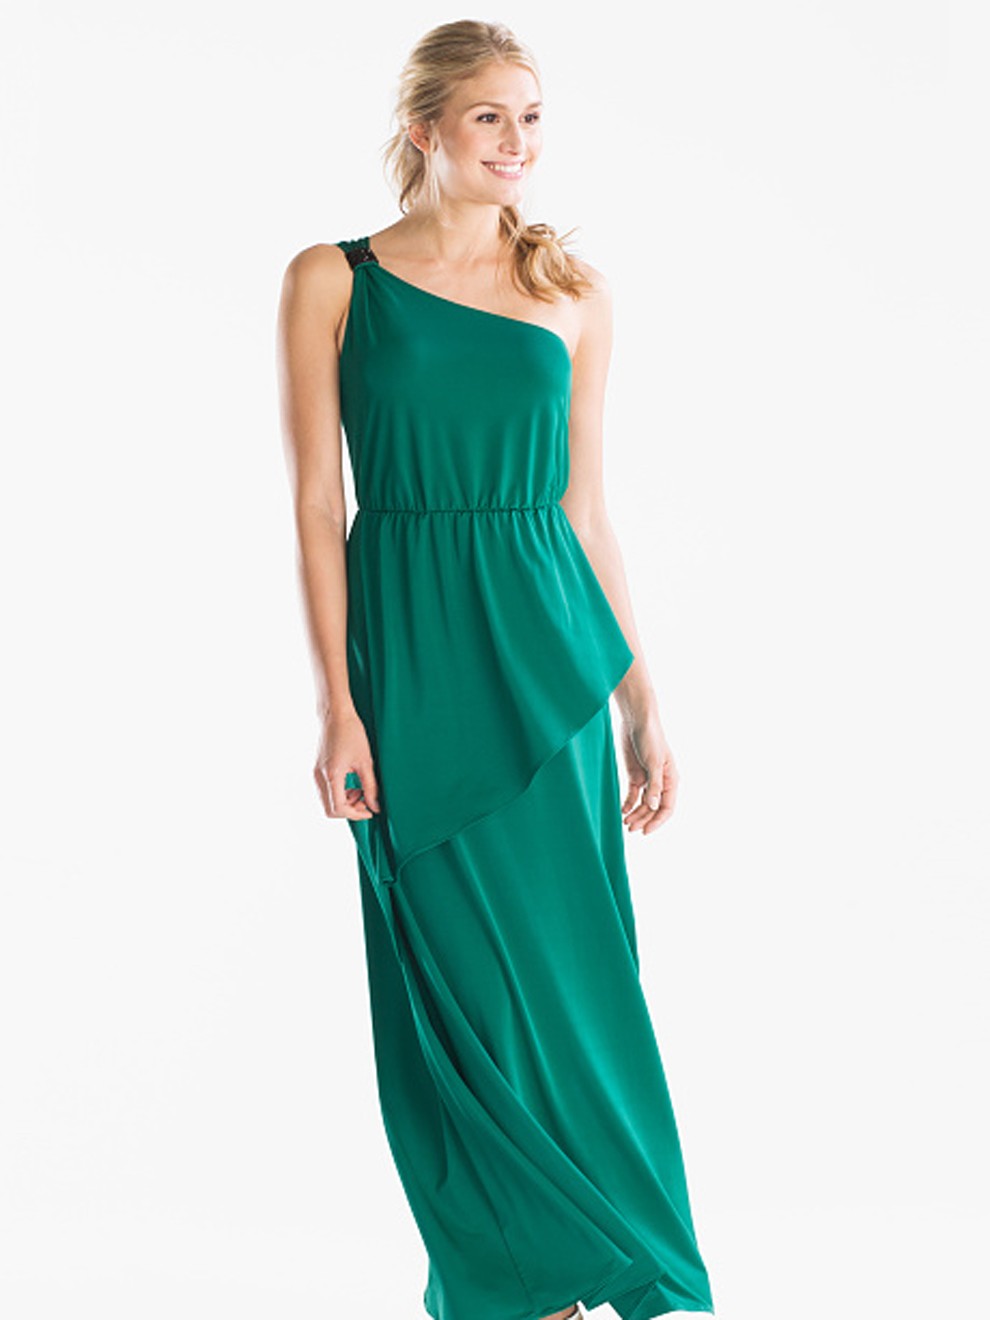 Vestido asimétrico verde esmeralda de por 79'90 euros